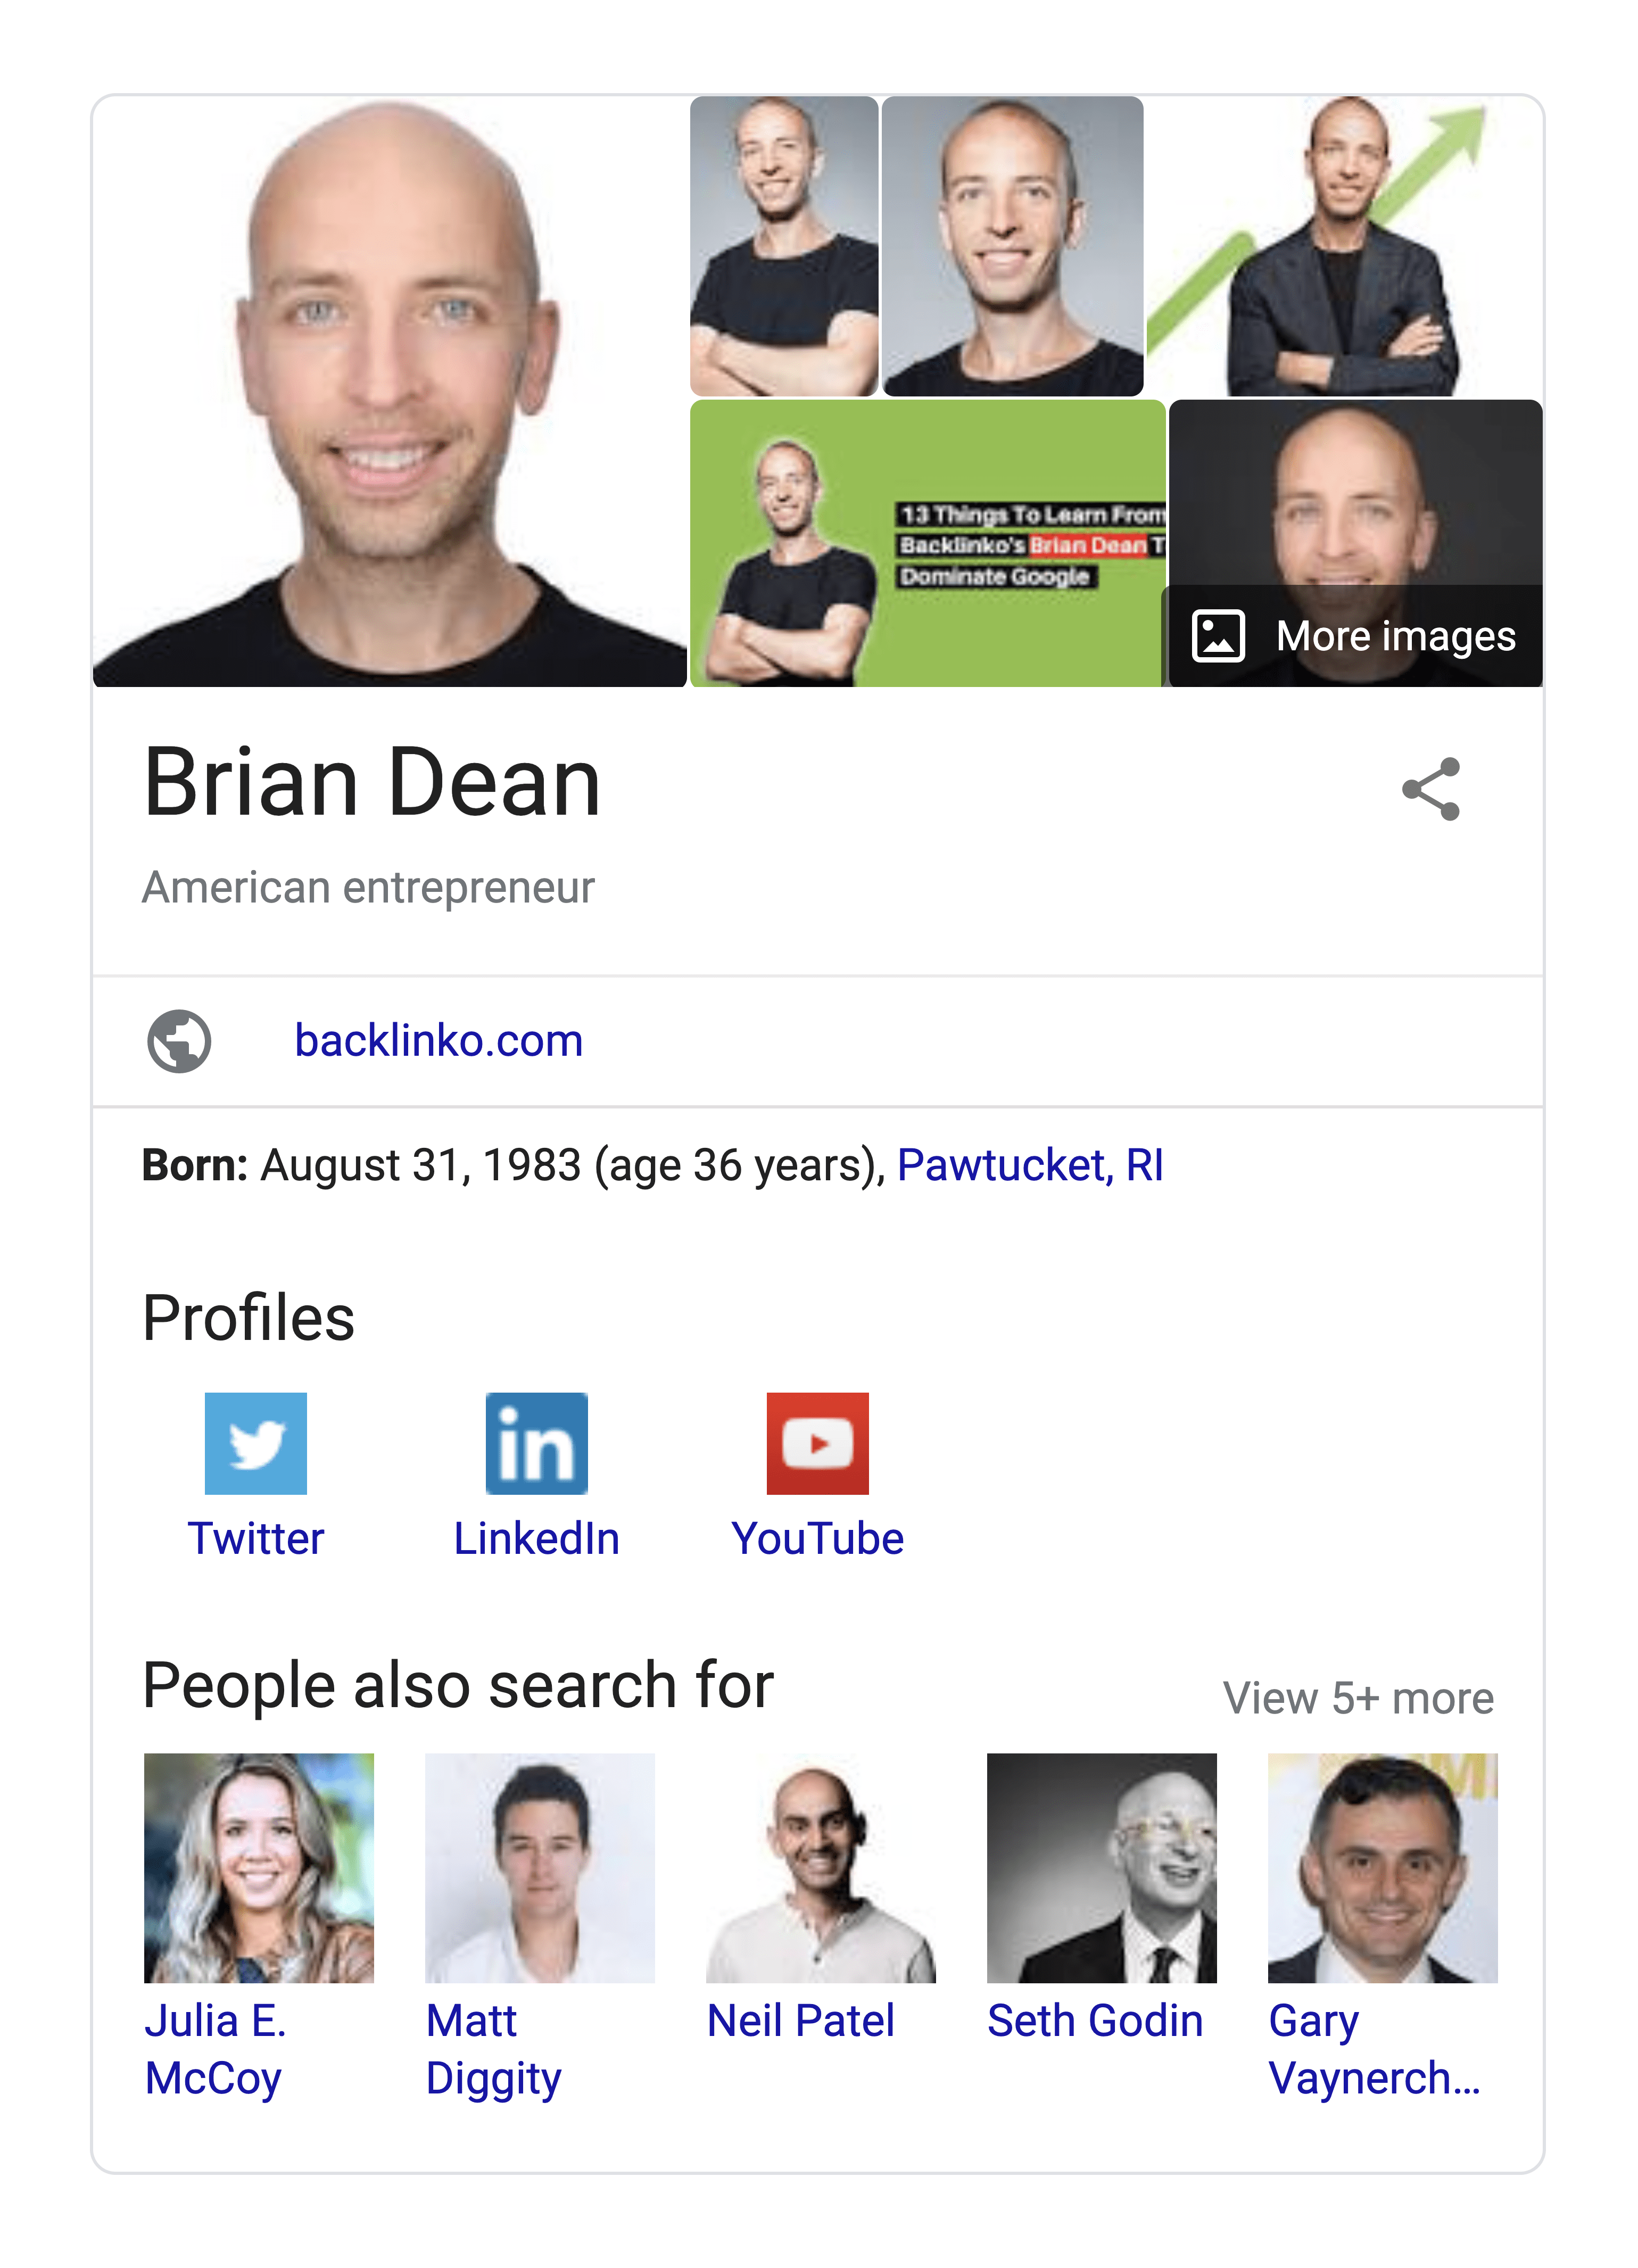 Brian Dean Google Knowledge Card